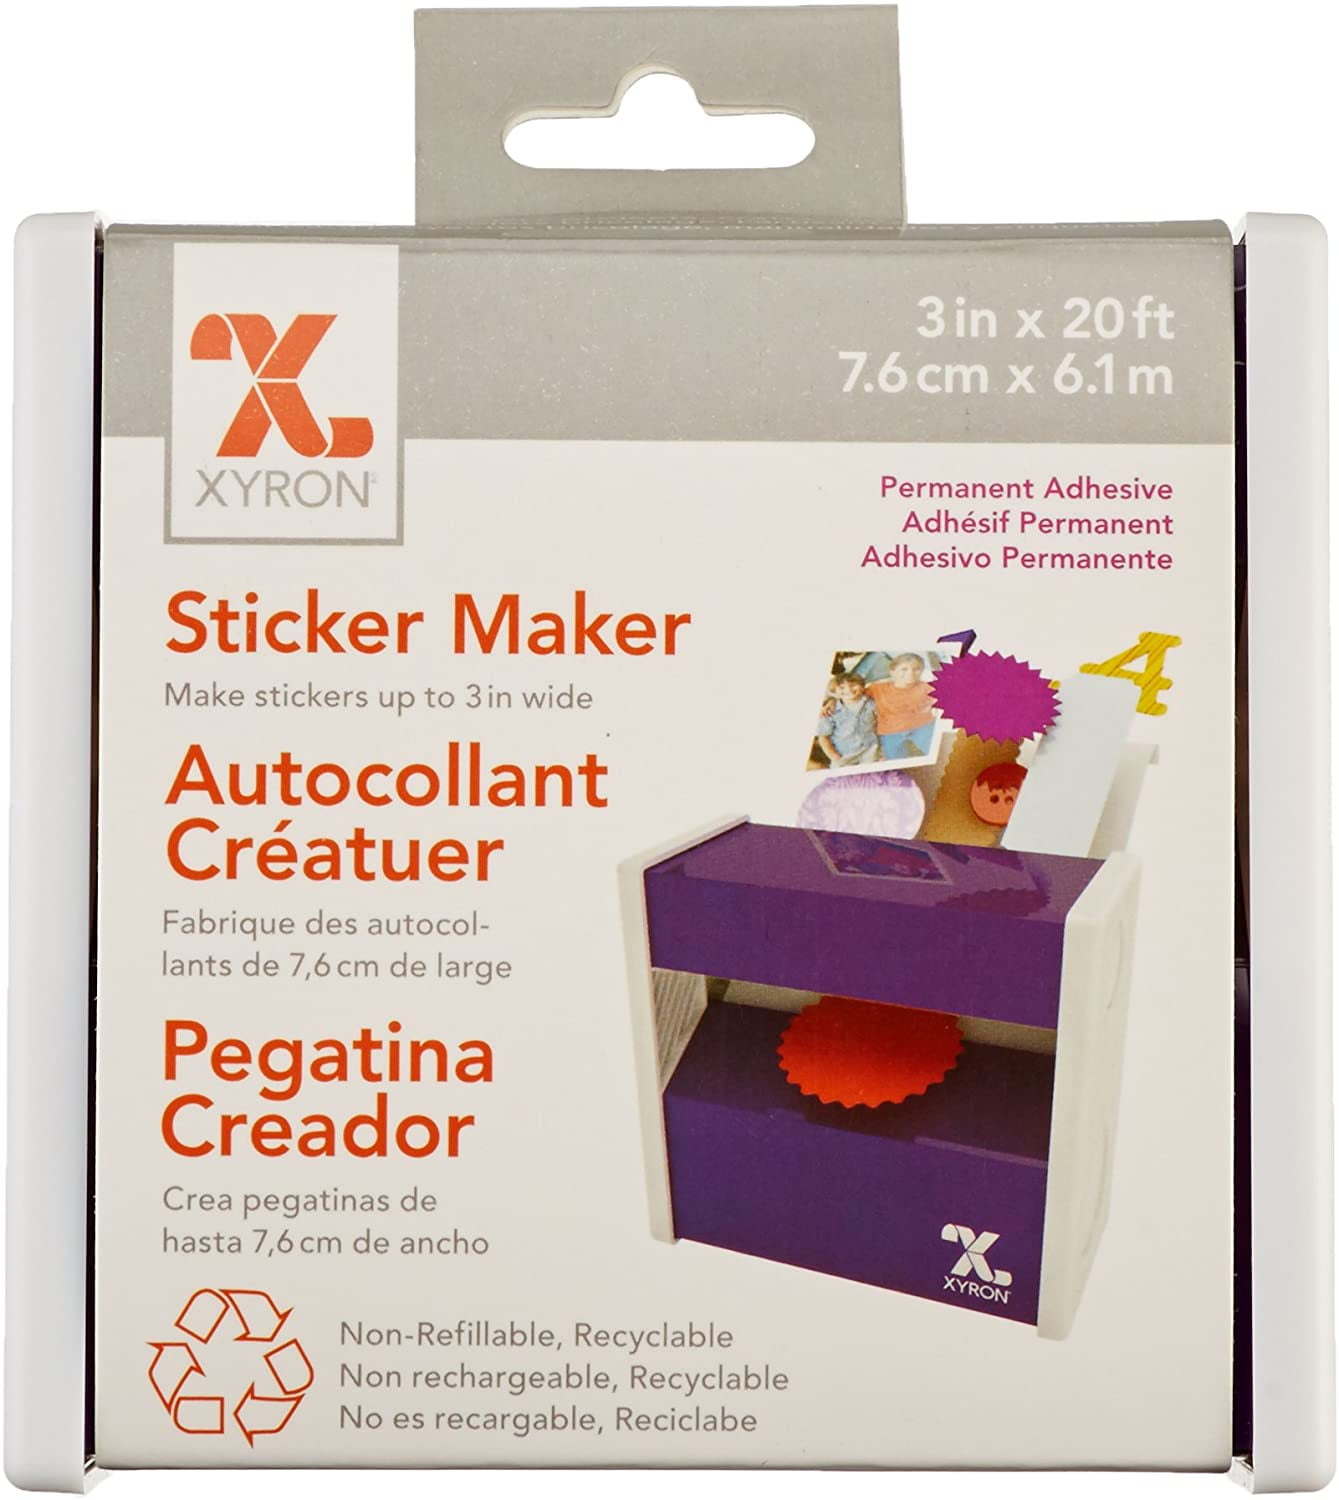 Xyron Sticker Maker - 608931000764